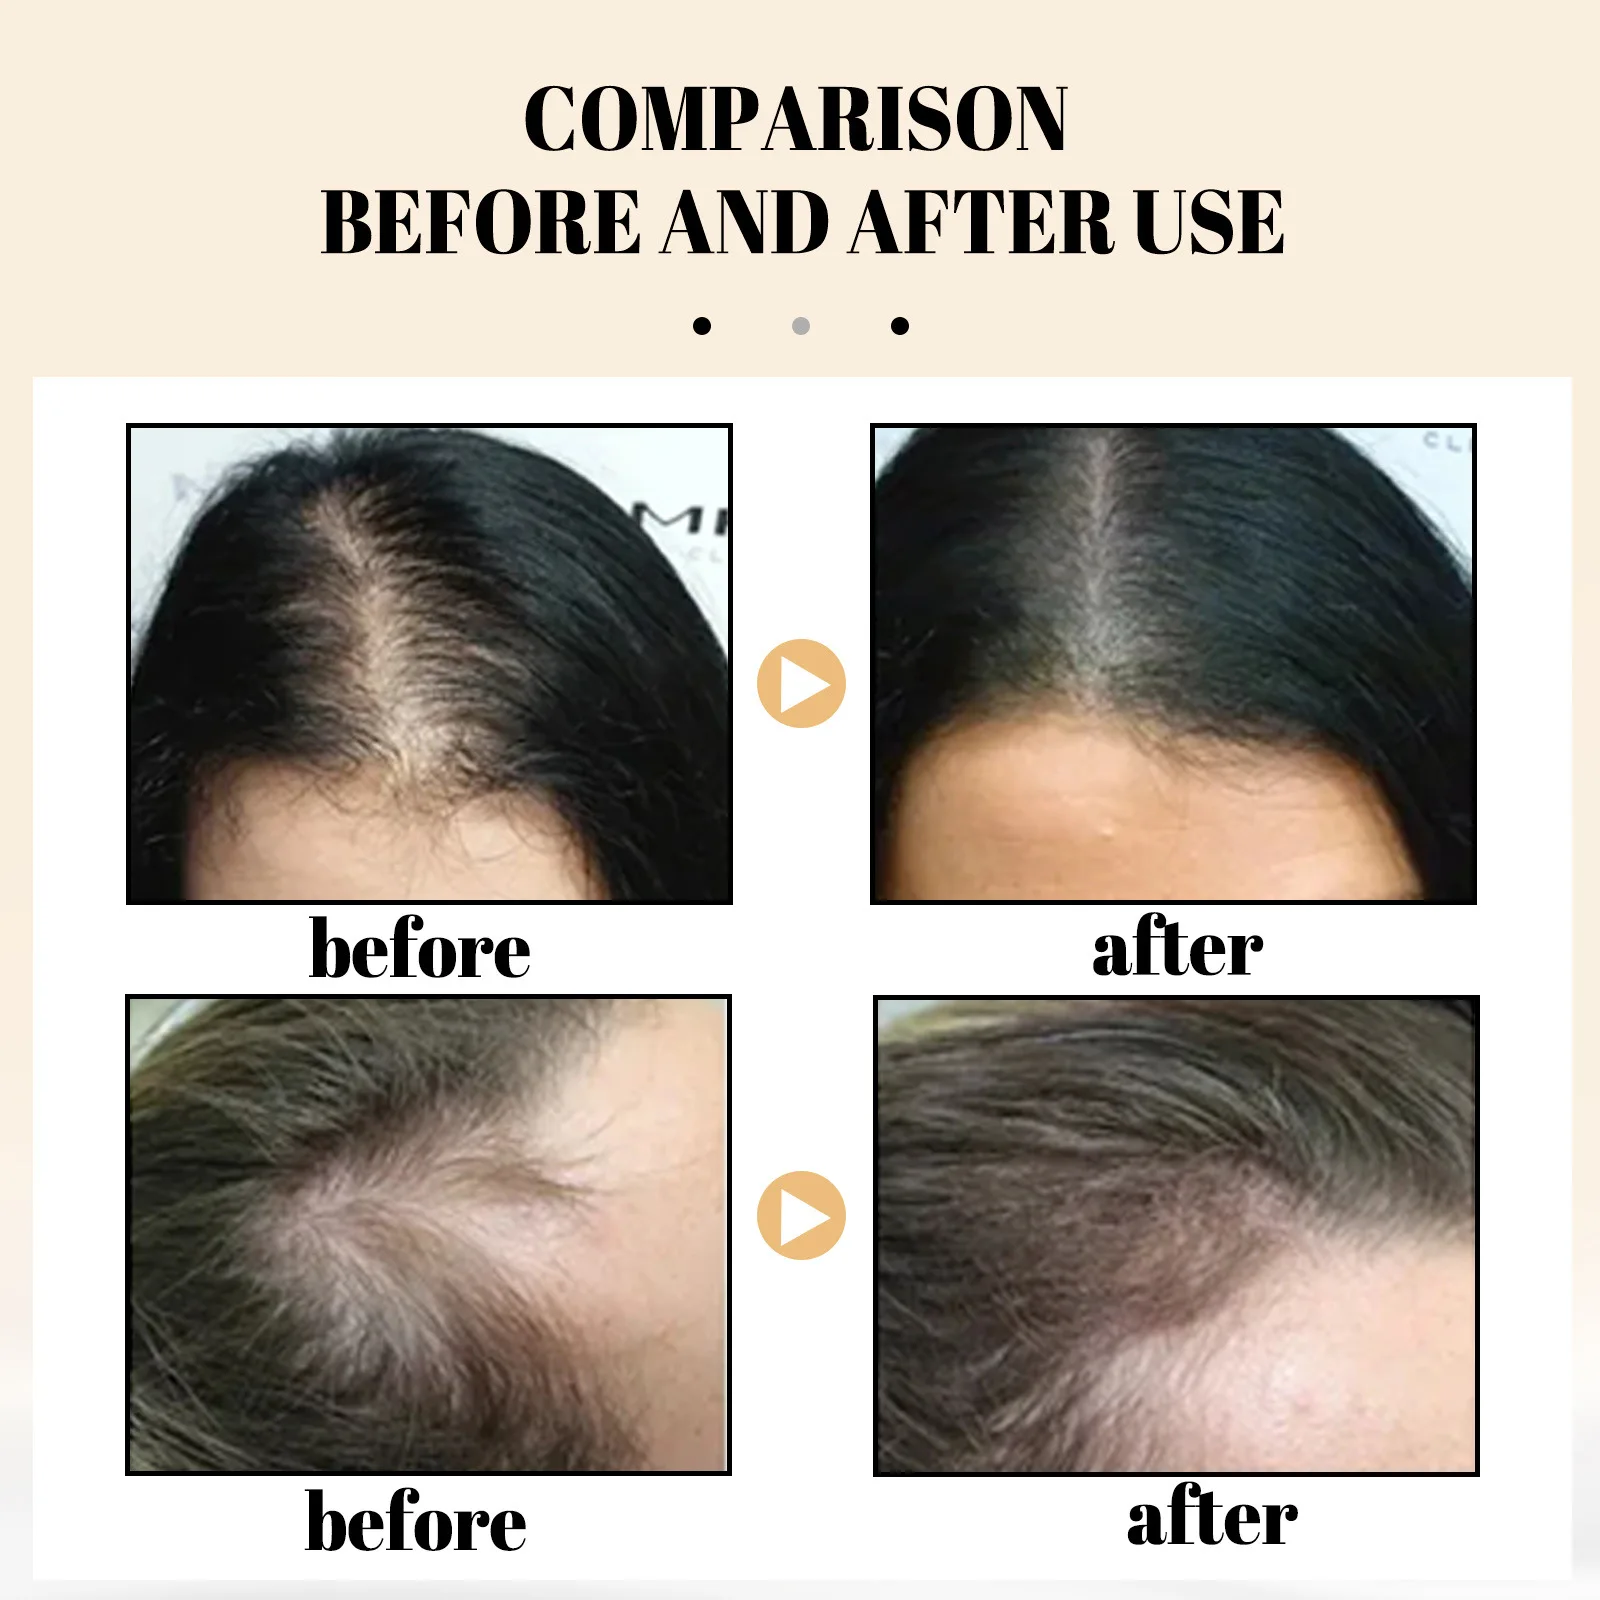 אורז נגד אובדן שמפו סבון להזין שיפור התקרחות לצמיחה מחודשת שיער הסרת קשקשים לחות השיער שמפו טיפולי - 2